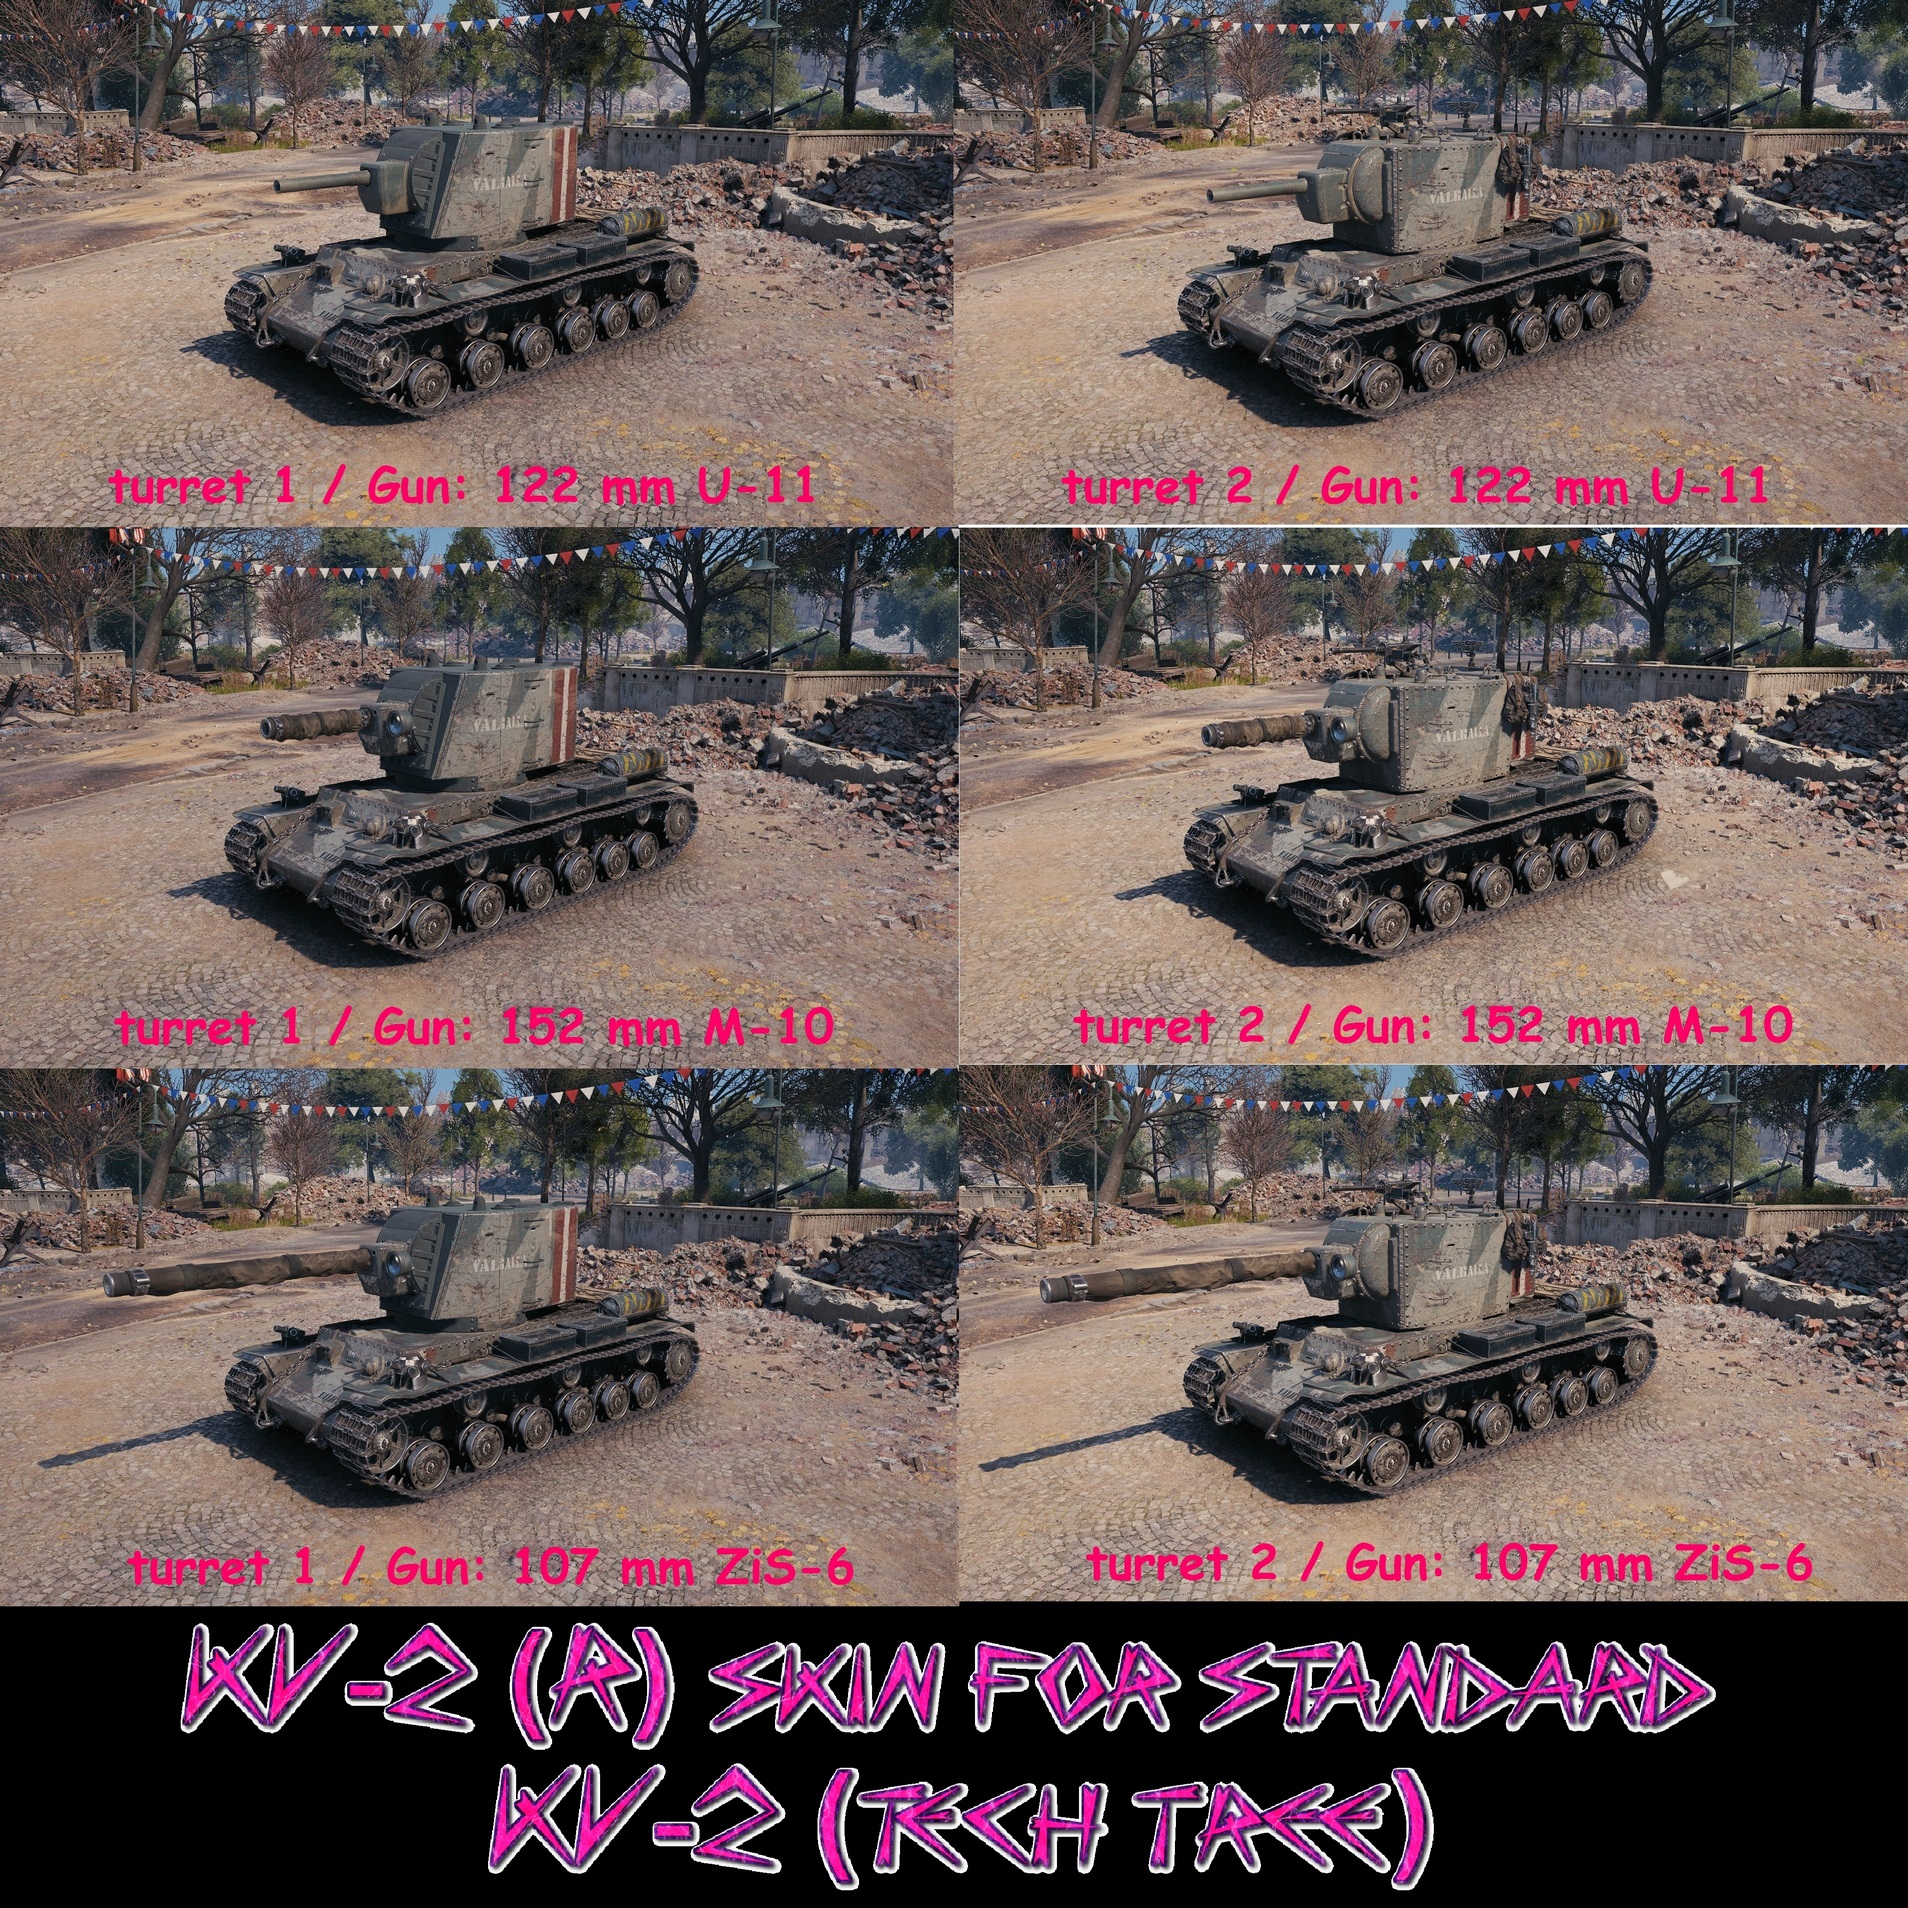 KV-2 (R) skin for "standard" KV-2 (1. turret & all guns added) project avatar